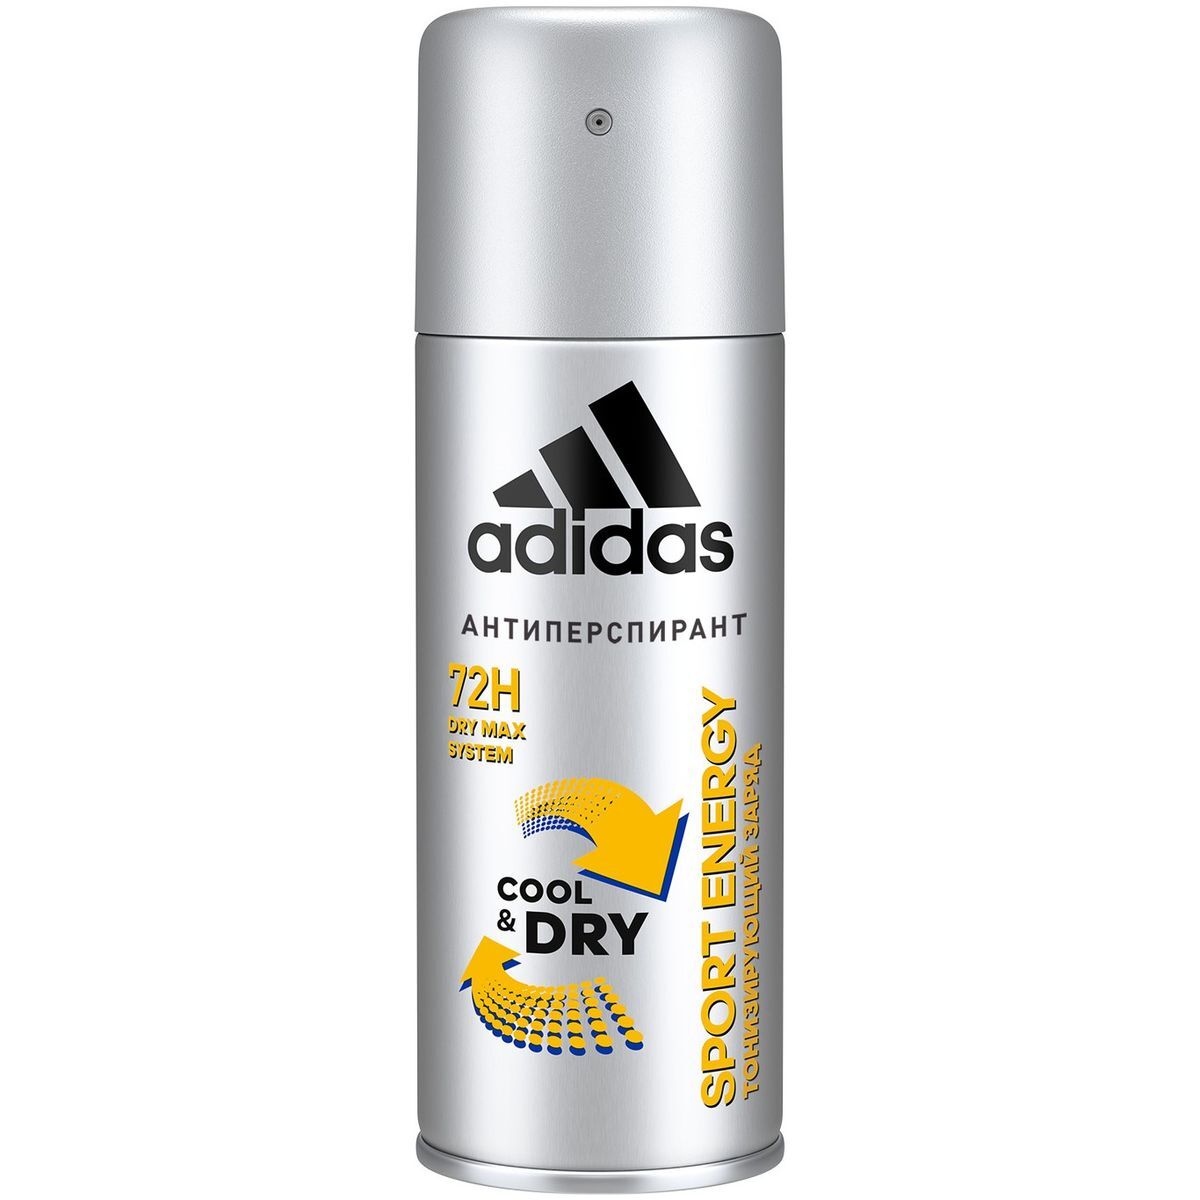 deodorant adidas 72h